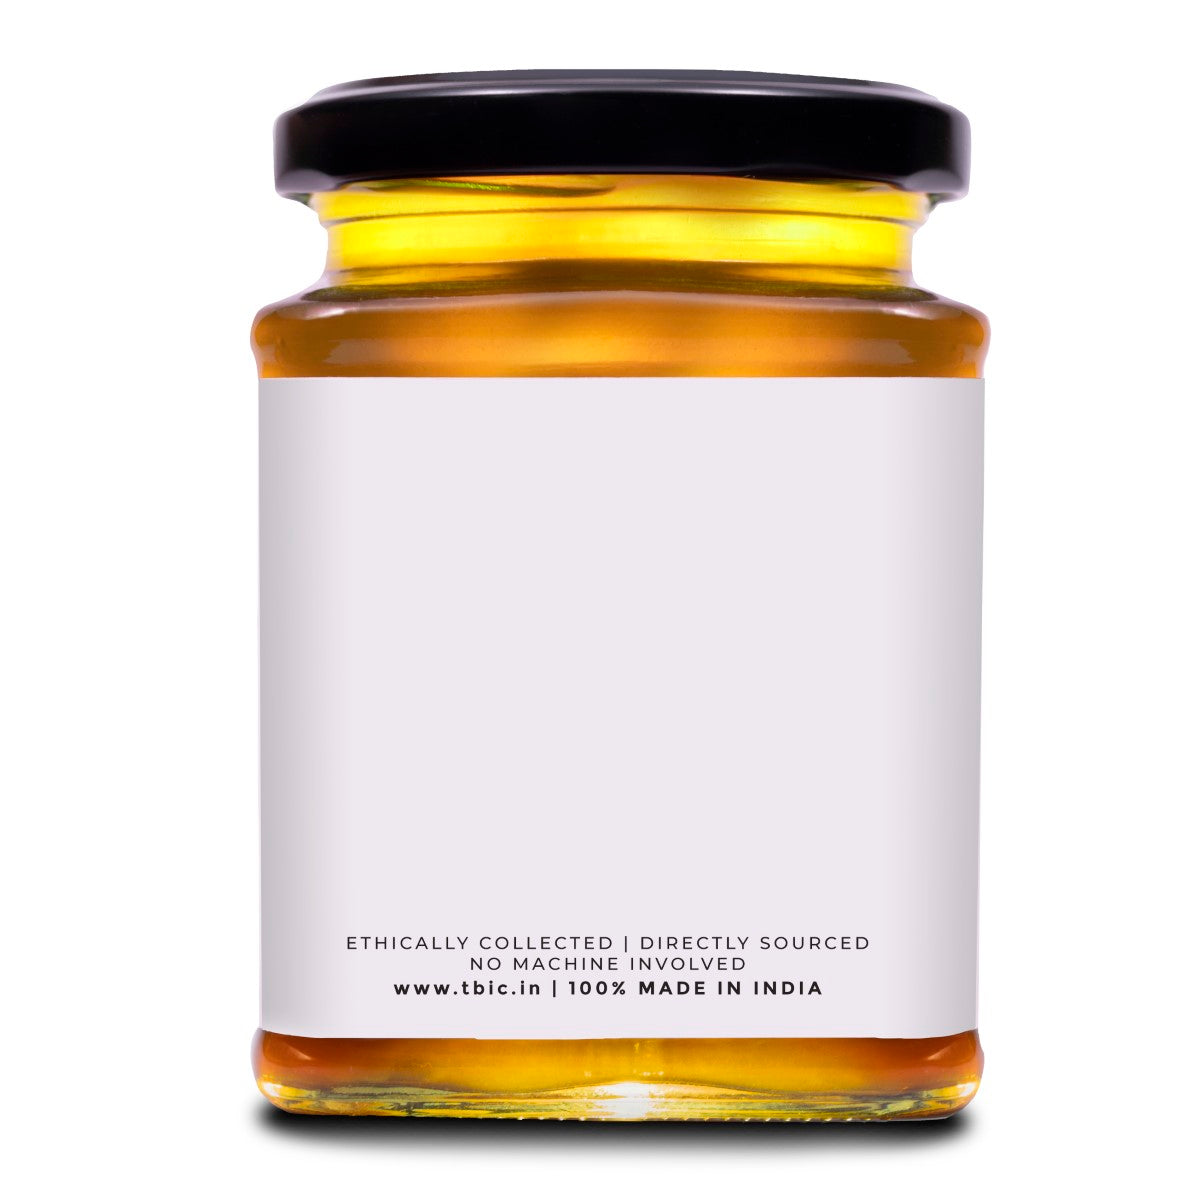 The Murmu Yellow Mustard Honey